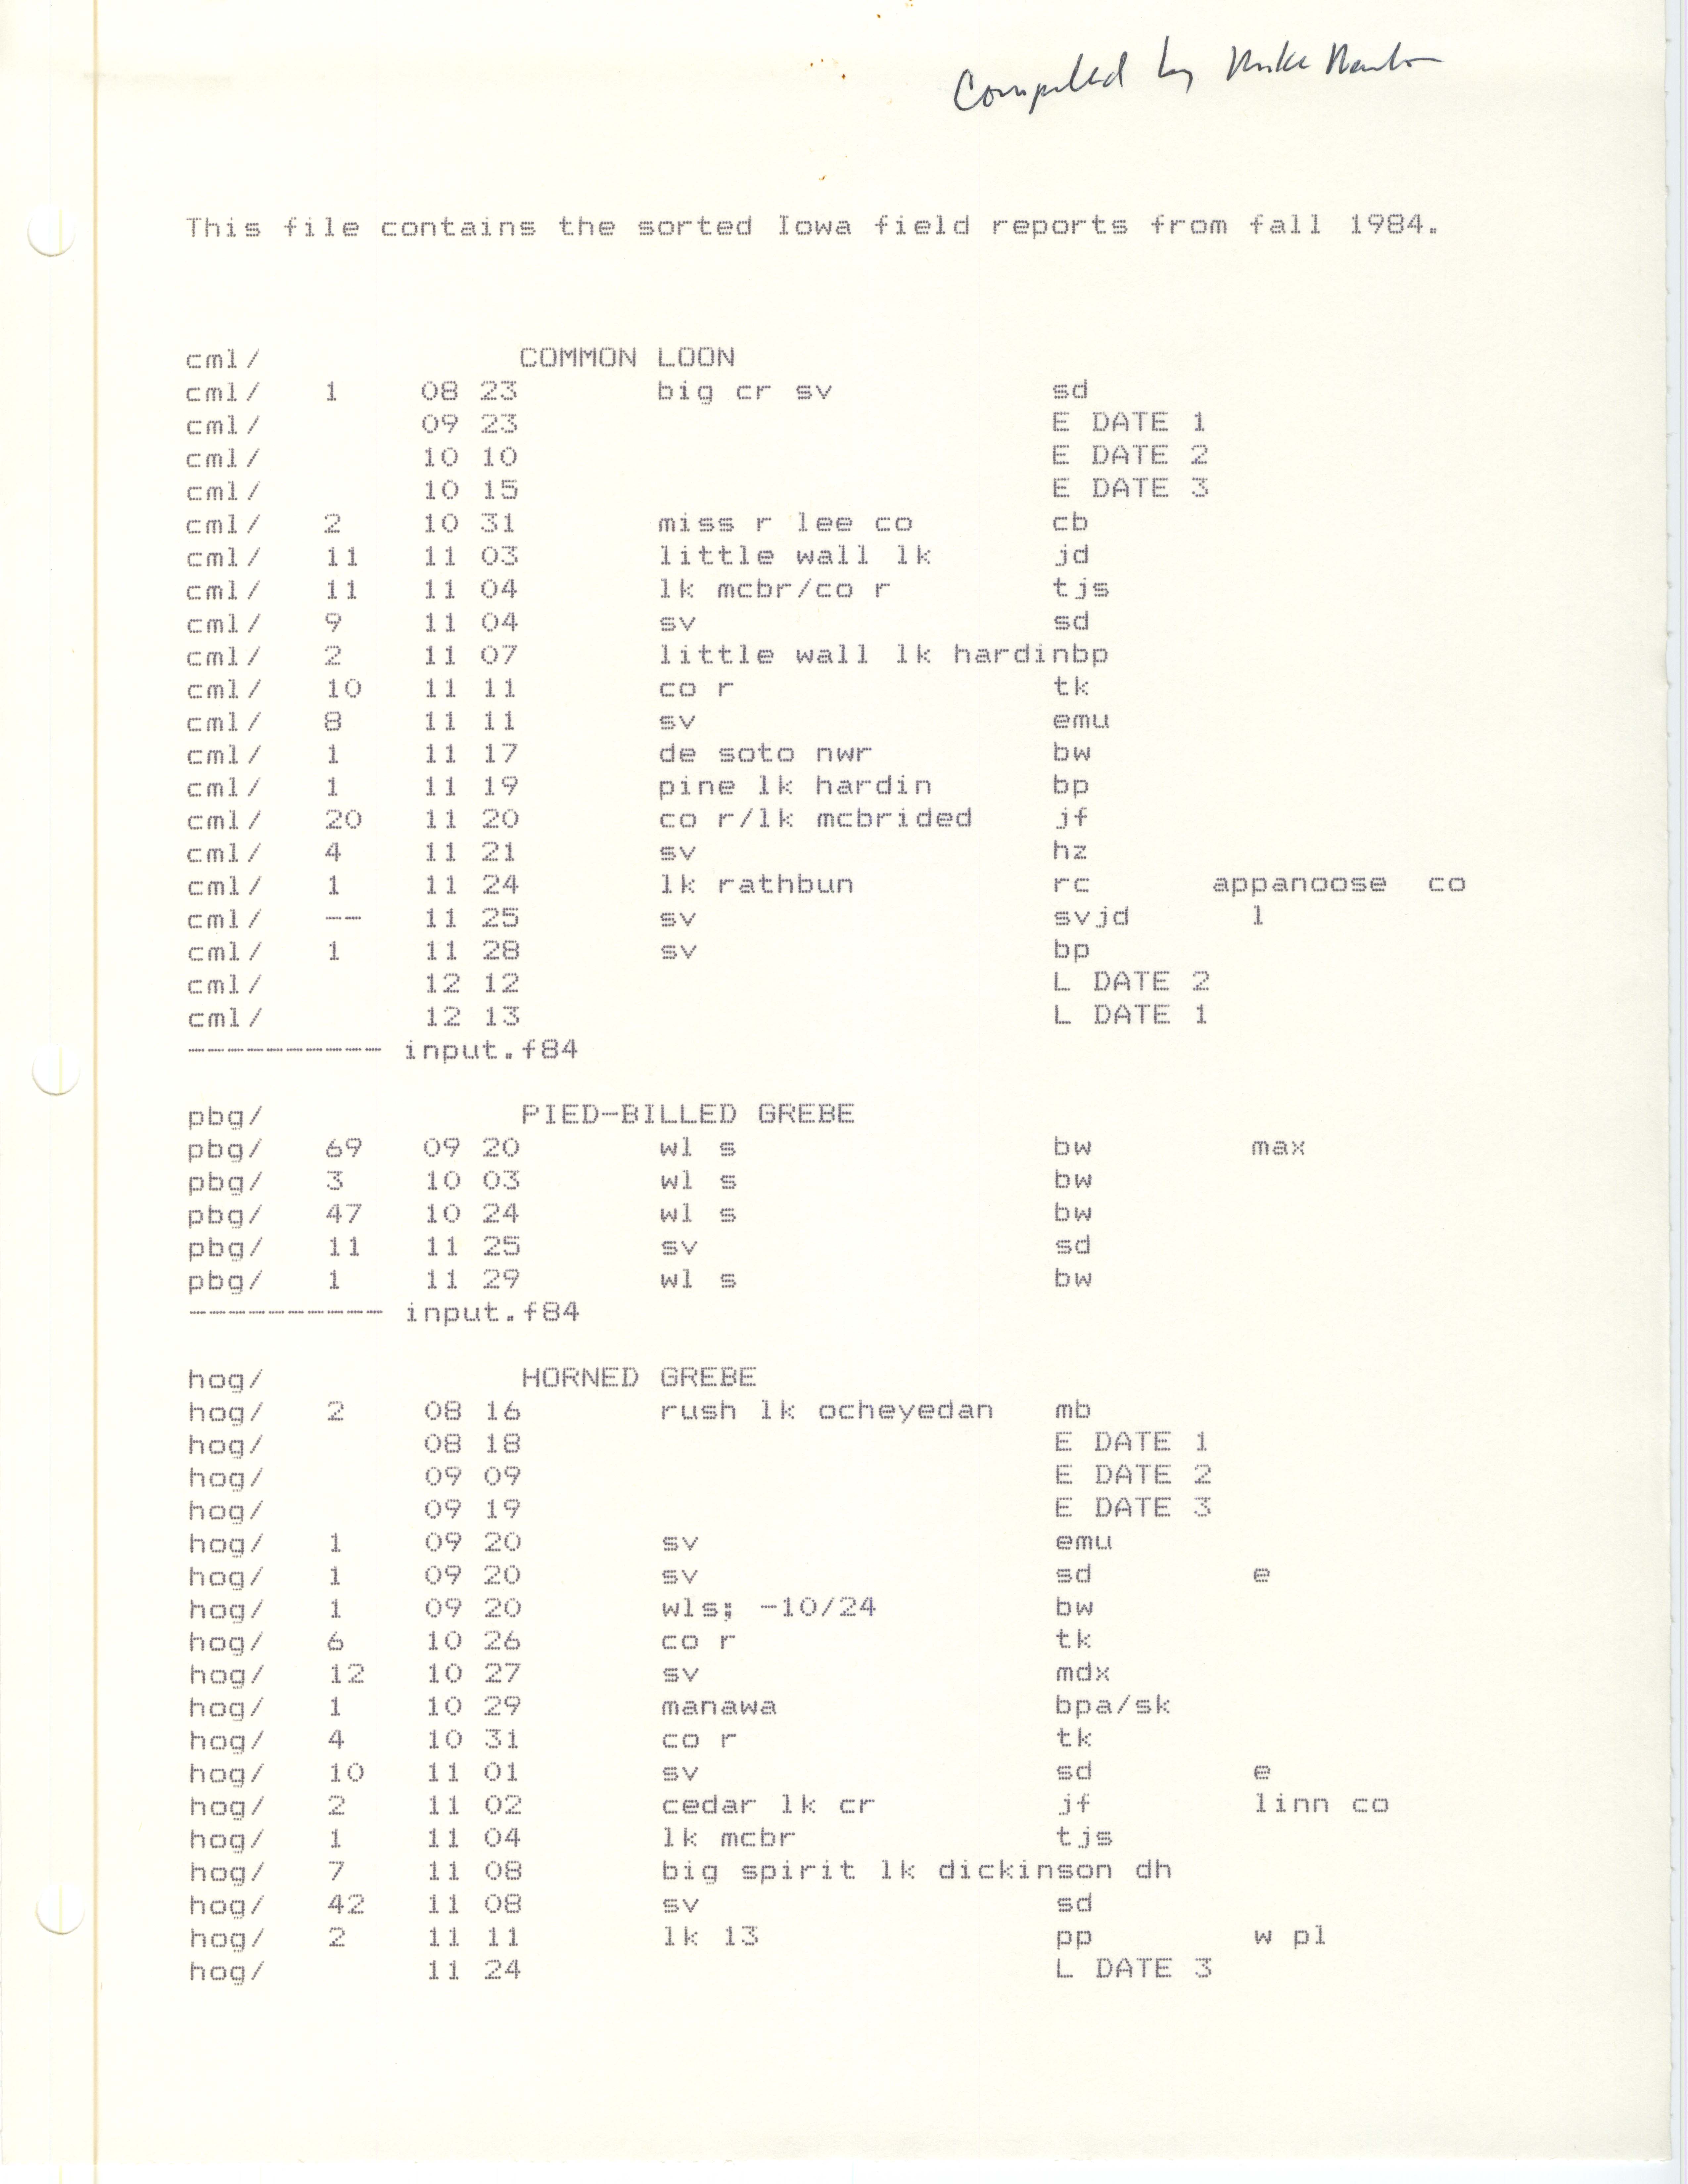 Iowa field reports data from fall 1984